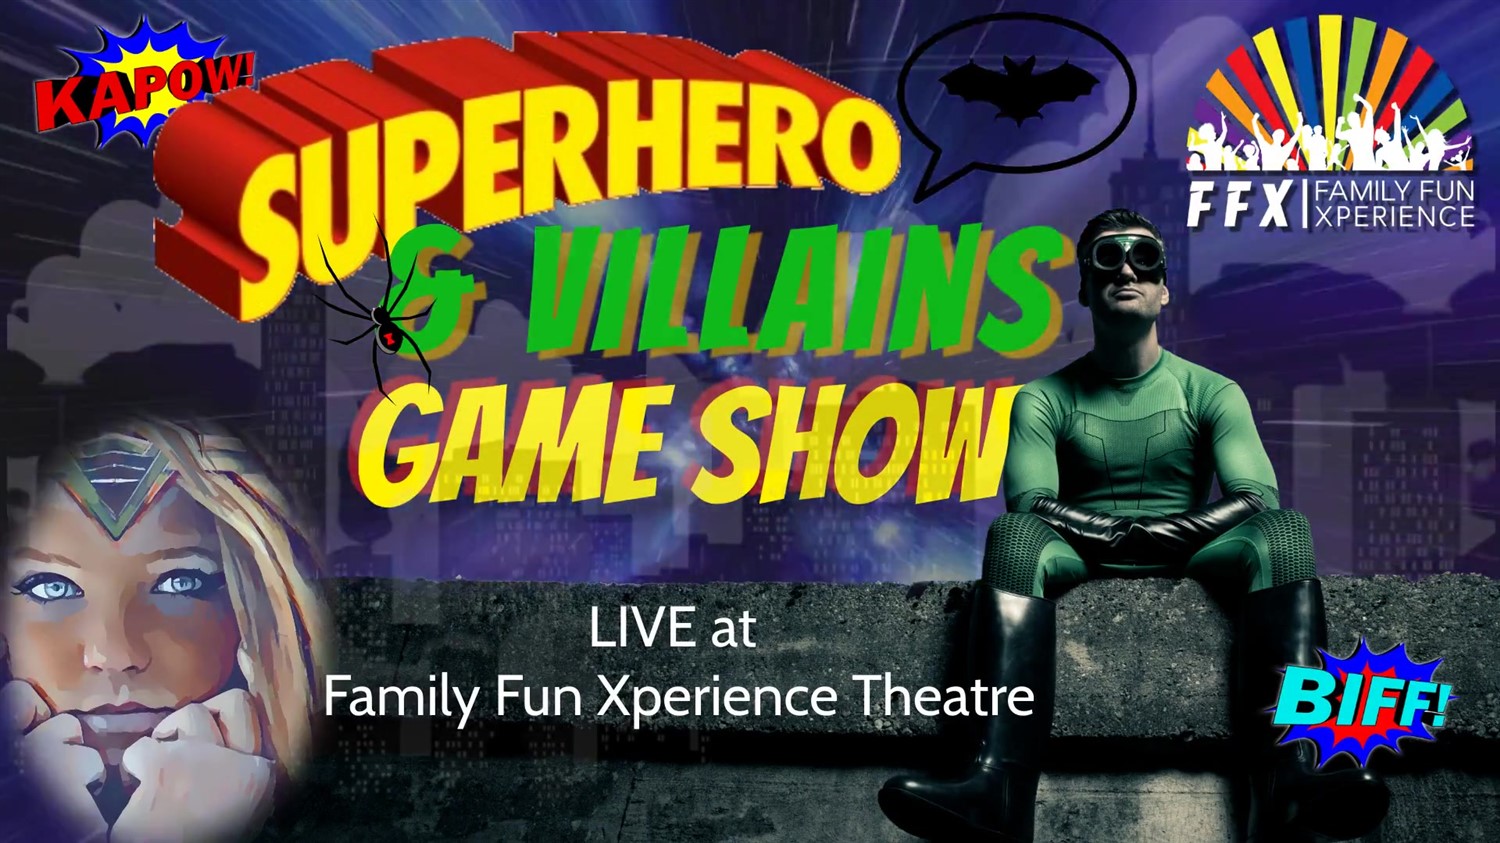 Superheroes & Villains Live Game Show FAMILY-POWERED SUPER FUN on avr. 15, 19:00@FFX Theatre - Choisissez un siège,Achetez des billets et obtenez des informations surFamily Fun Xperience tickets.ffxshow.org